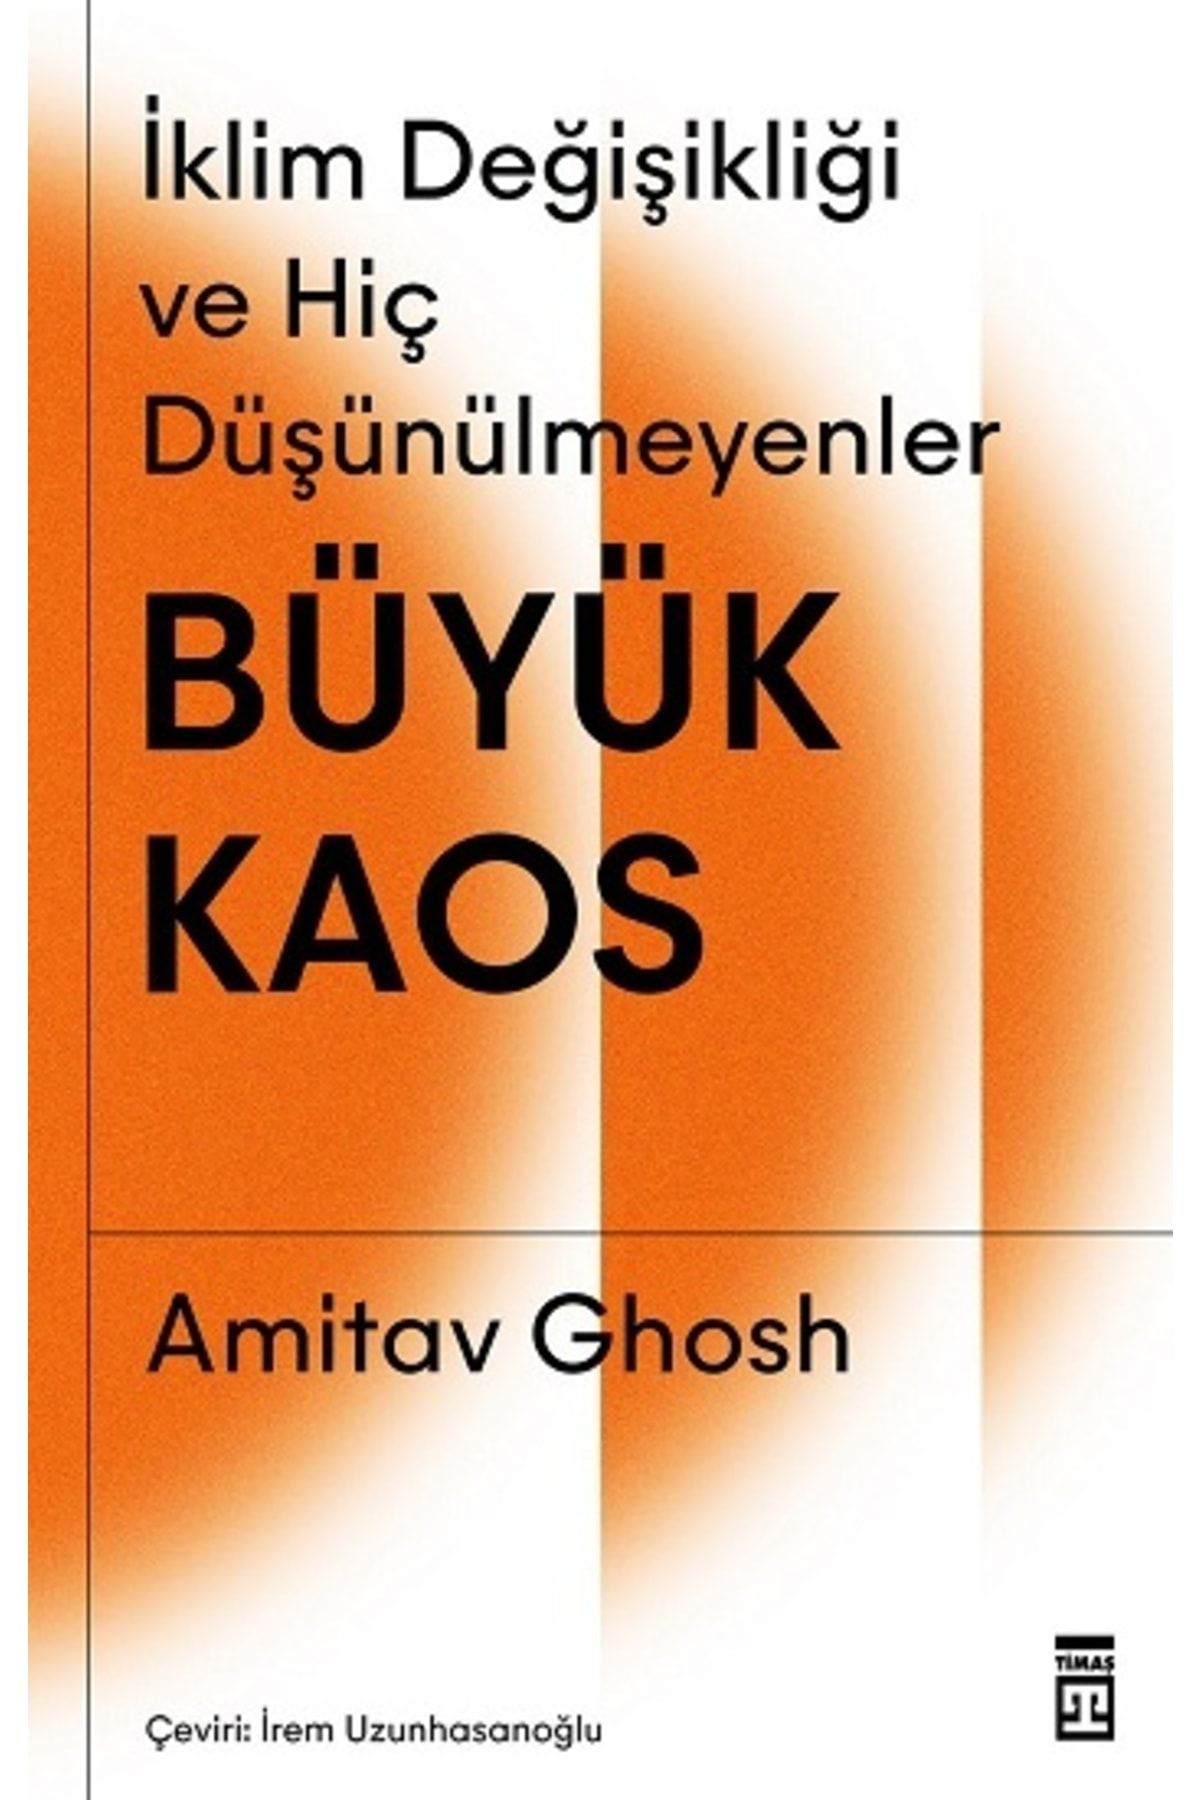 Timaş Yayınları Büyük Kaos - Iklim Değişikliği Ve Hiç Düşünülmeyenler - Amitav Ghosh